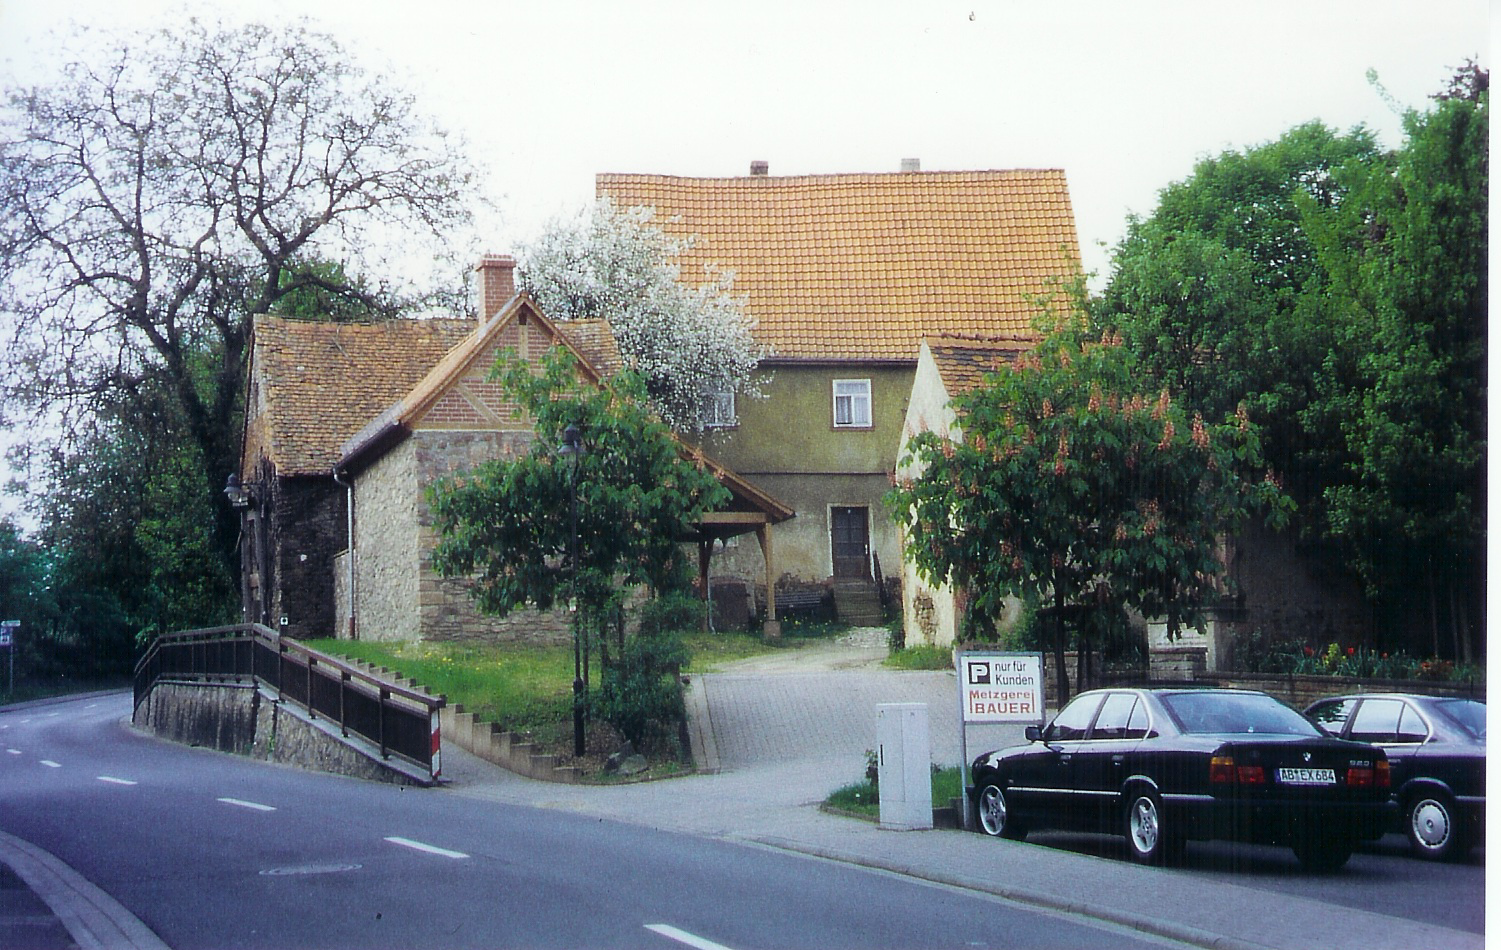 Dieses Bild zeigt den Pfarrhof in Johannesberg